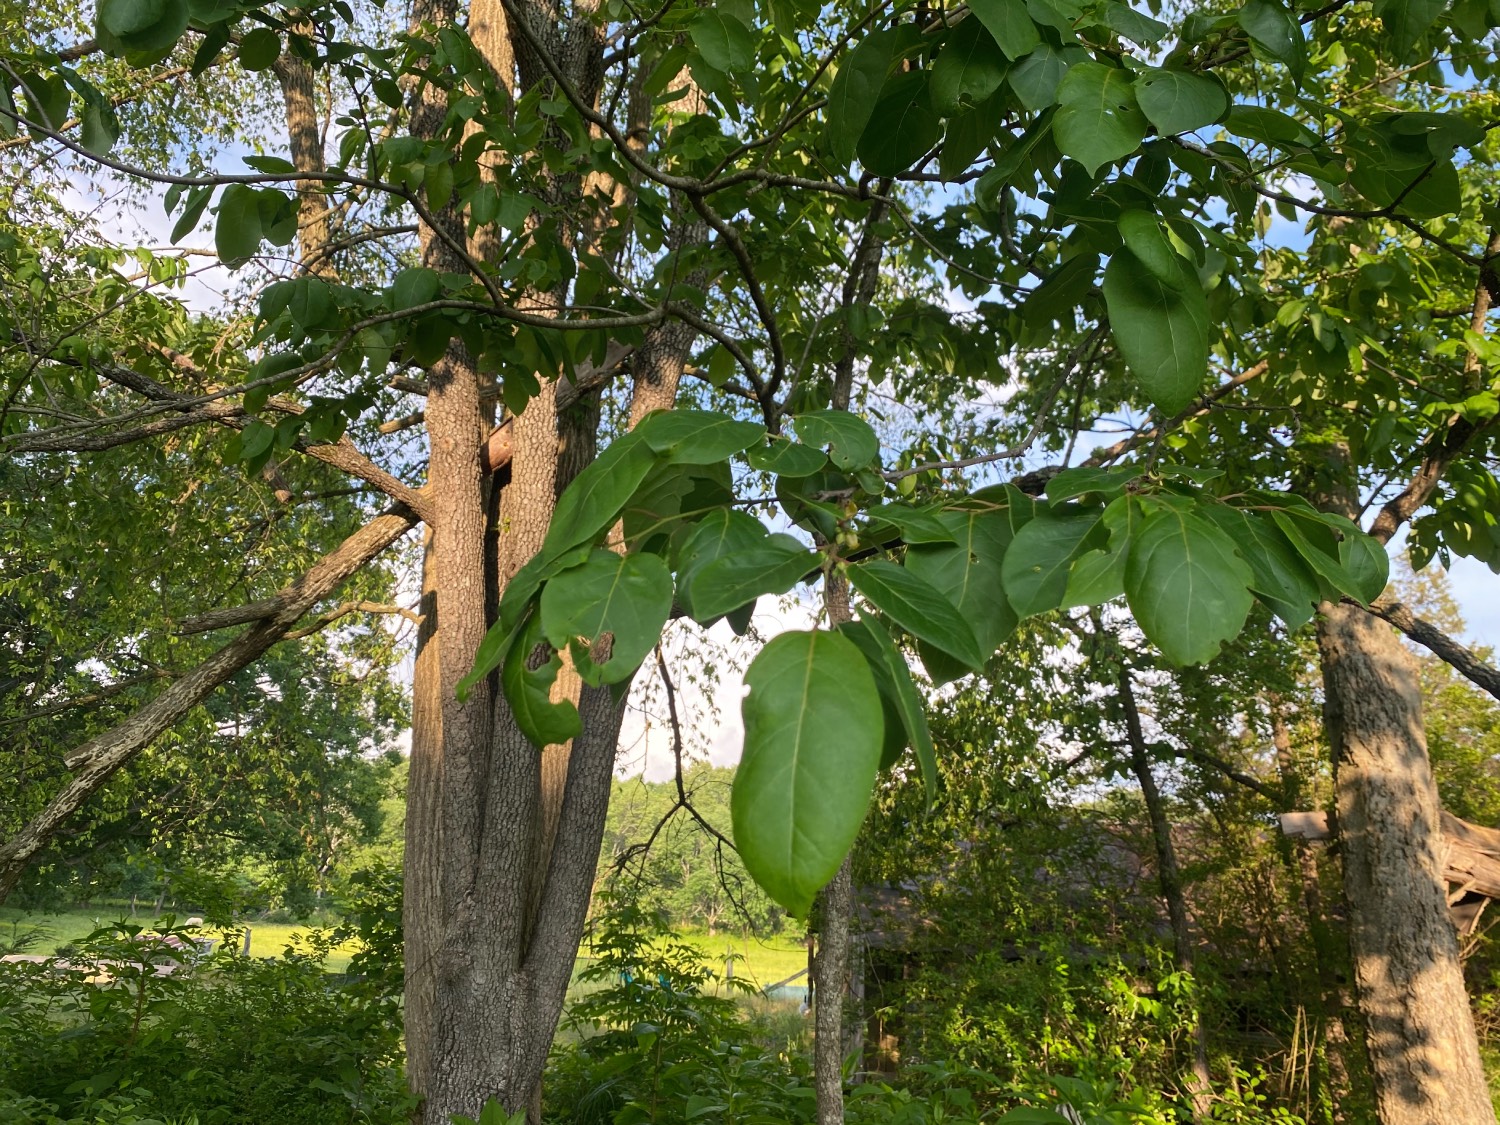 persimmon tree leaves